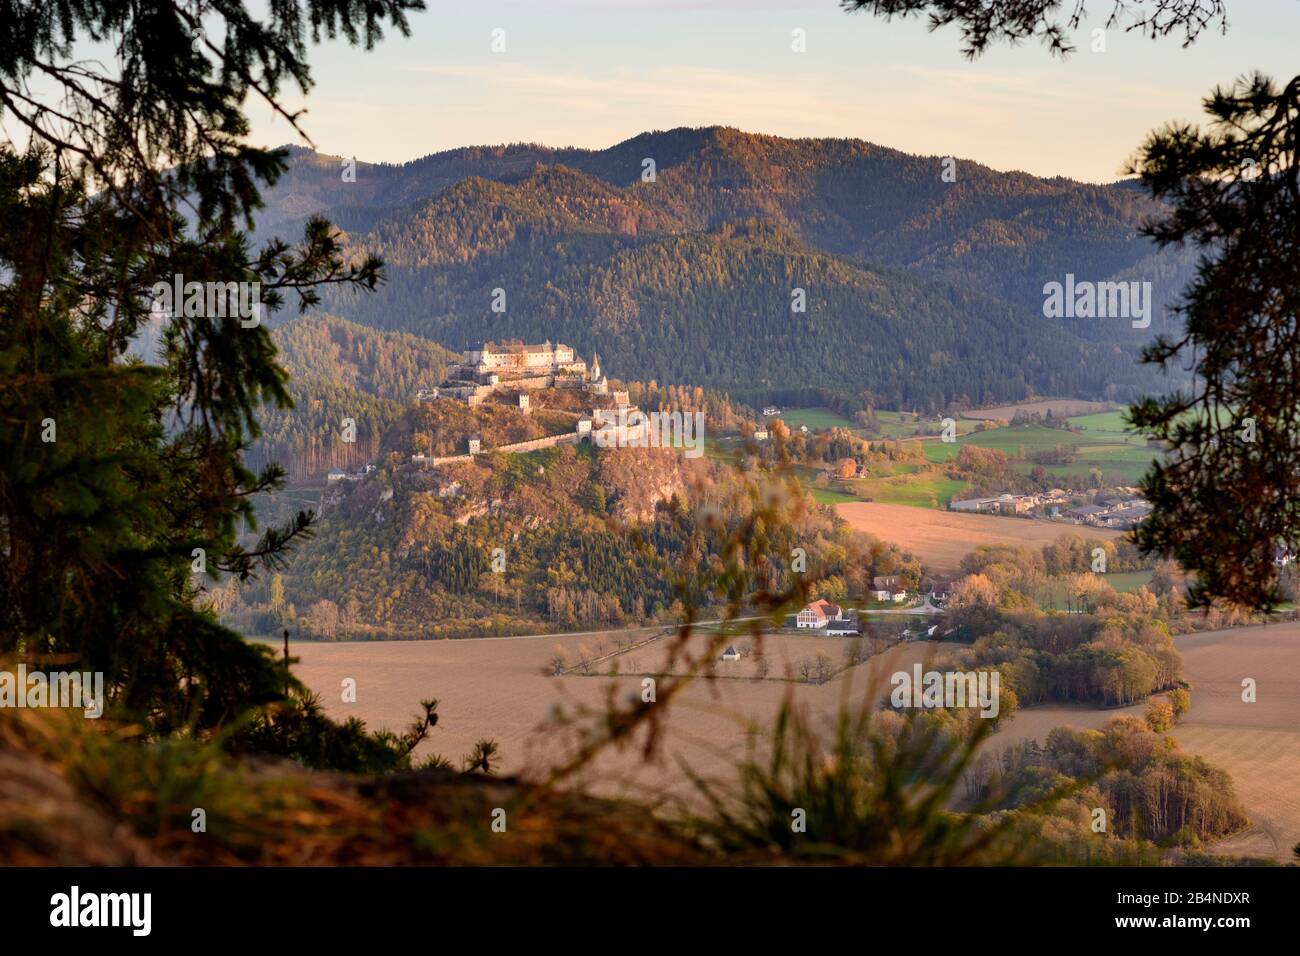 Sankt Georgen am Längsee, Hochosterwitz Castle in Austria, Carinthia, Stock Photo